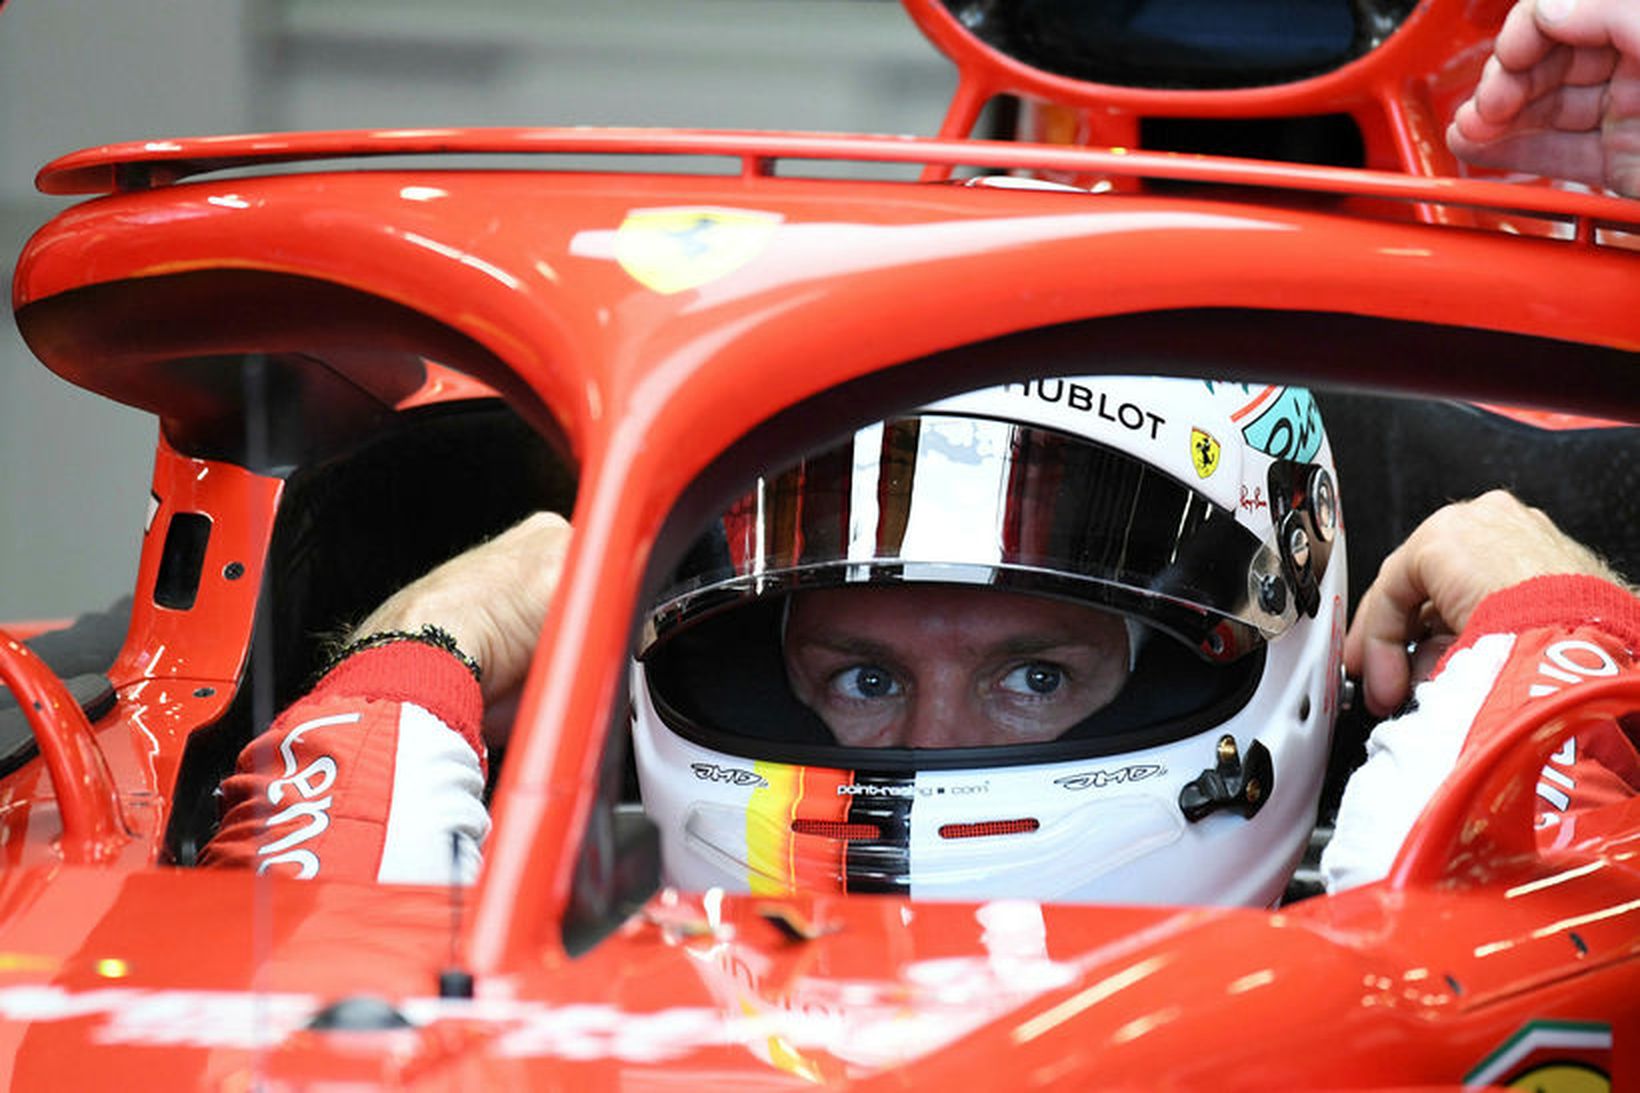 Sebastian Vettel milli tímatilrauna í bíl sínum.